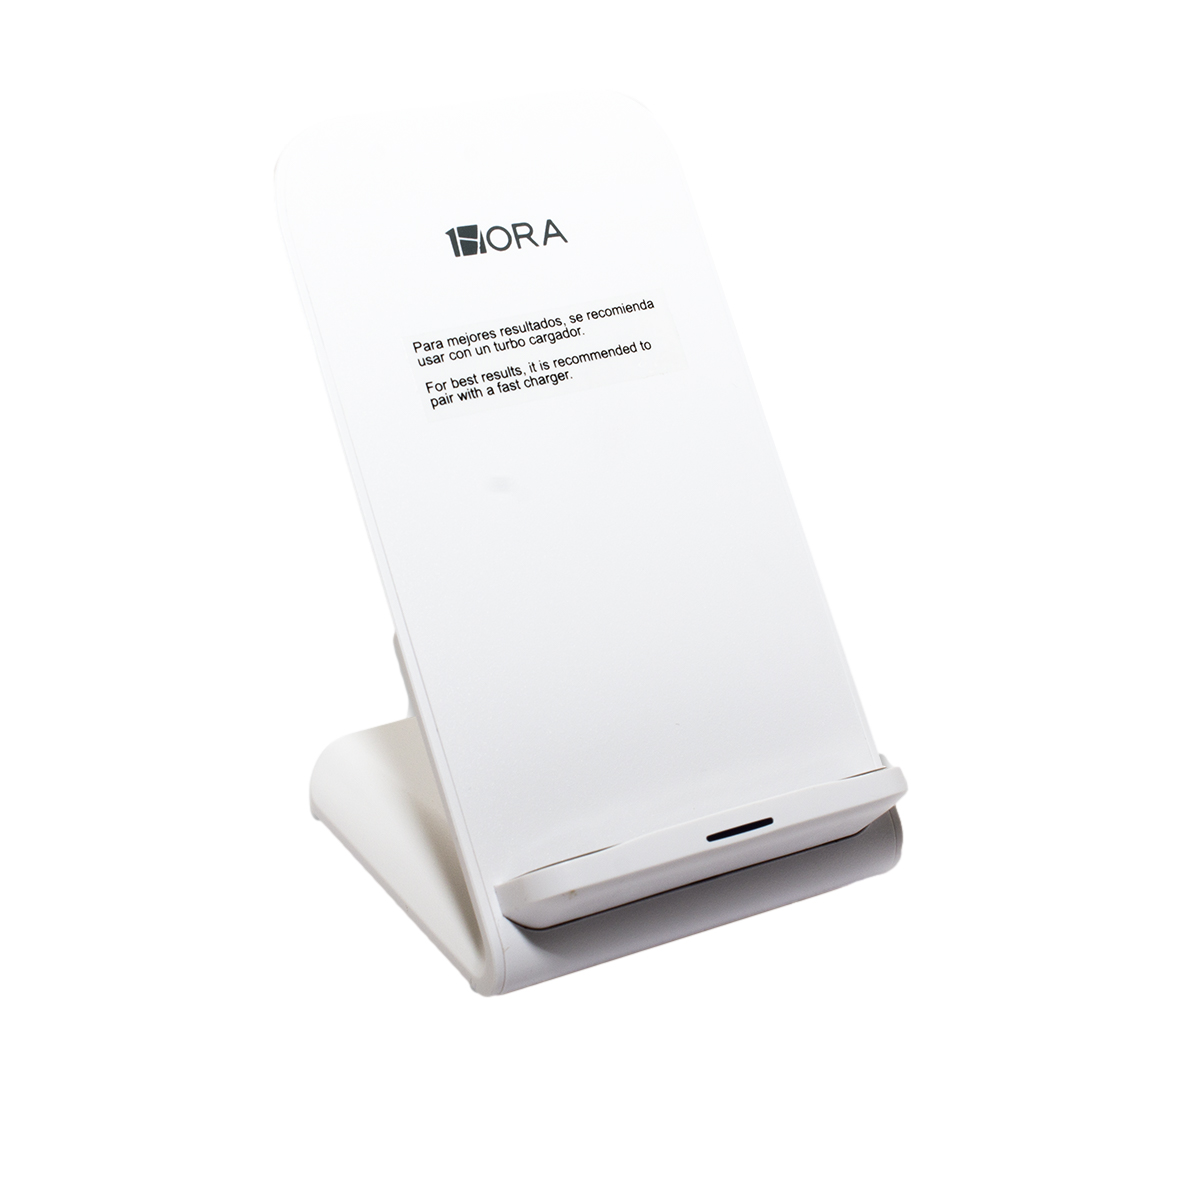 Soporte para celular con carga Inalámbrica GAR157 - Pixal Center